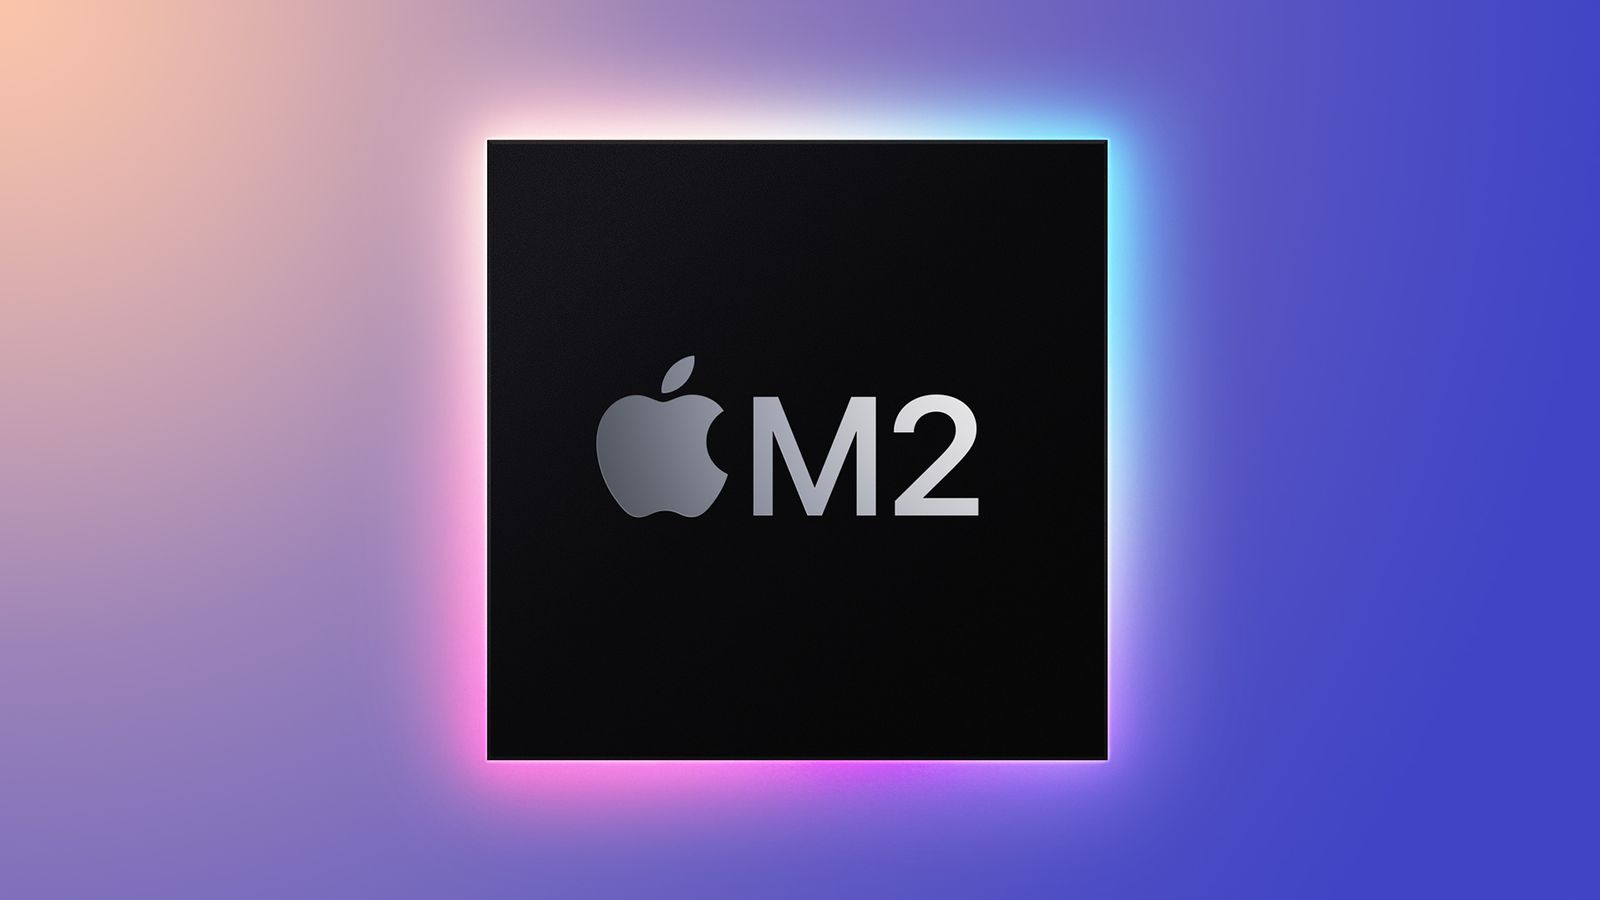 پیش از برگزاری رویداد اپل، اخباری مبنی بر آزمایش تراشه M2 اپل منتشر شد